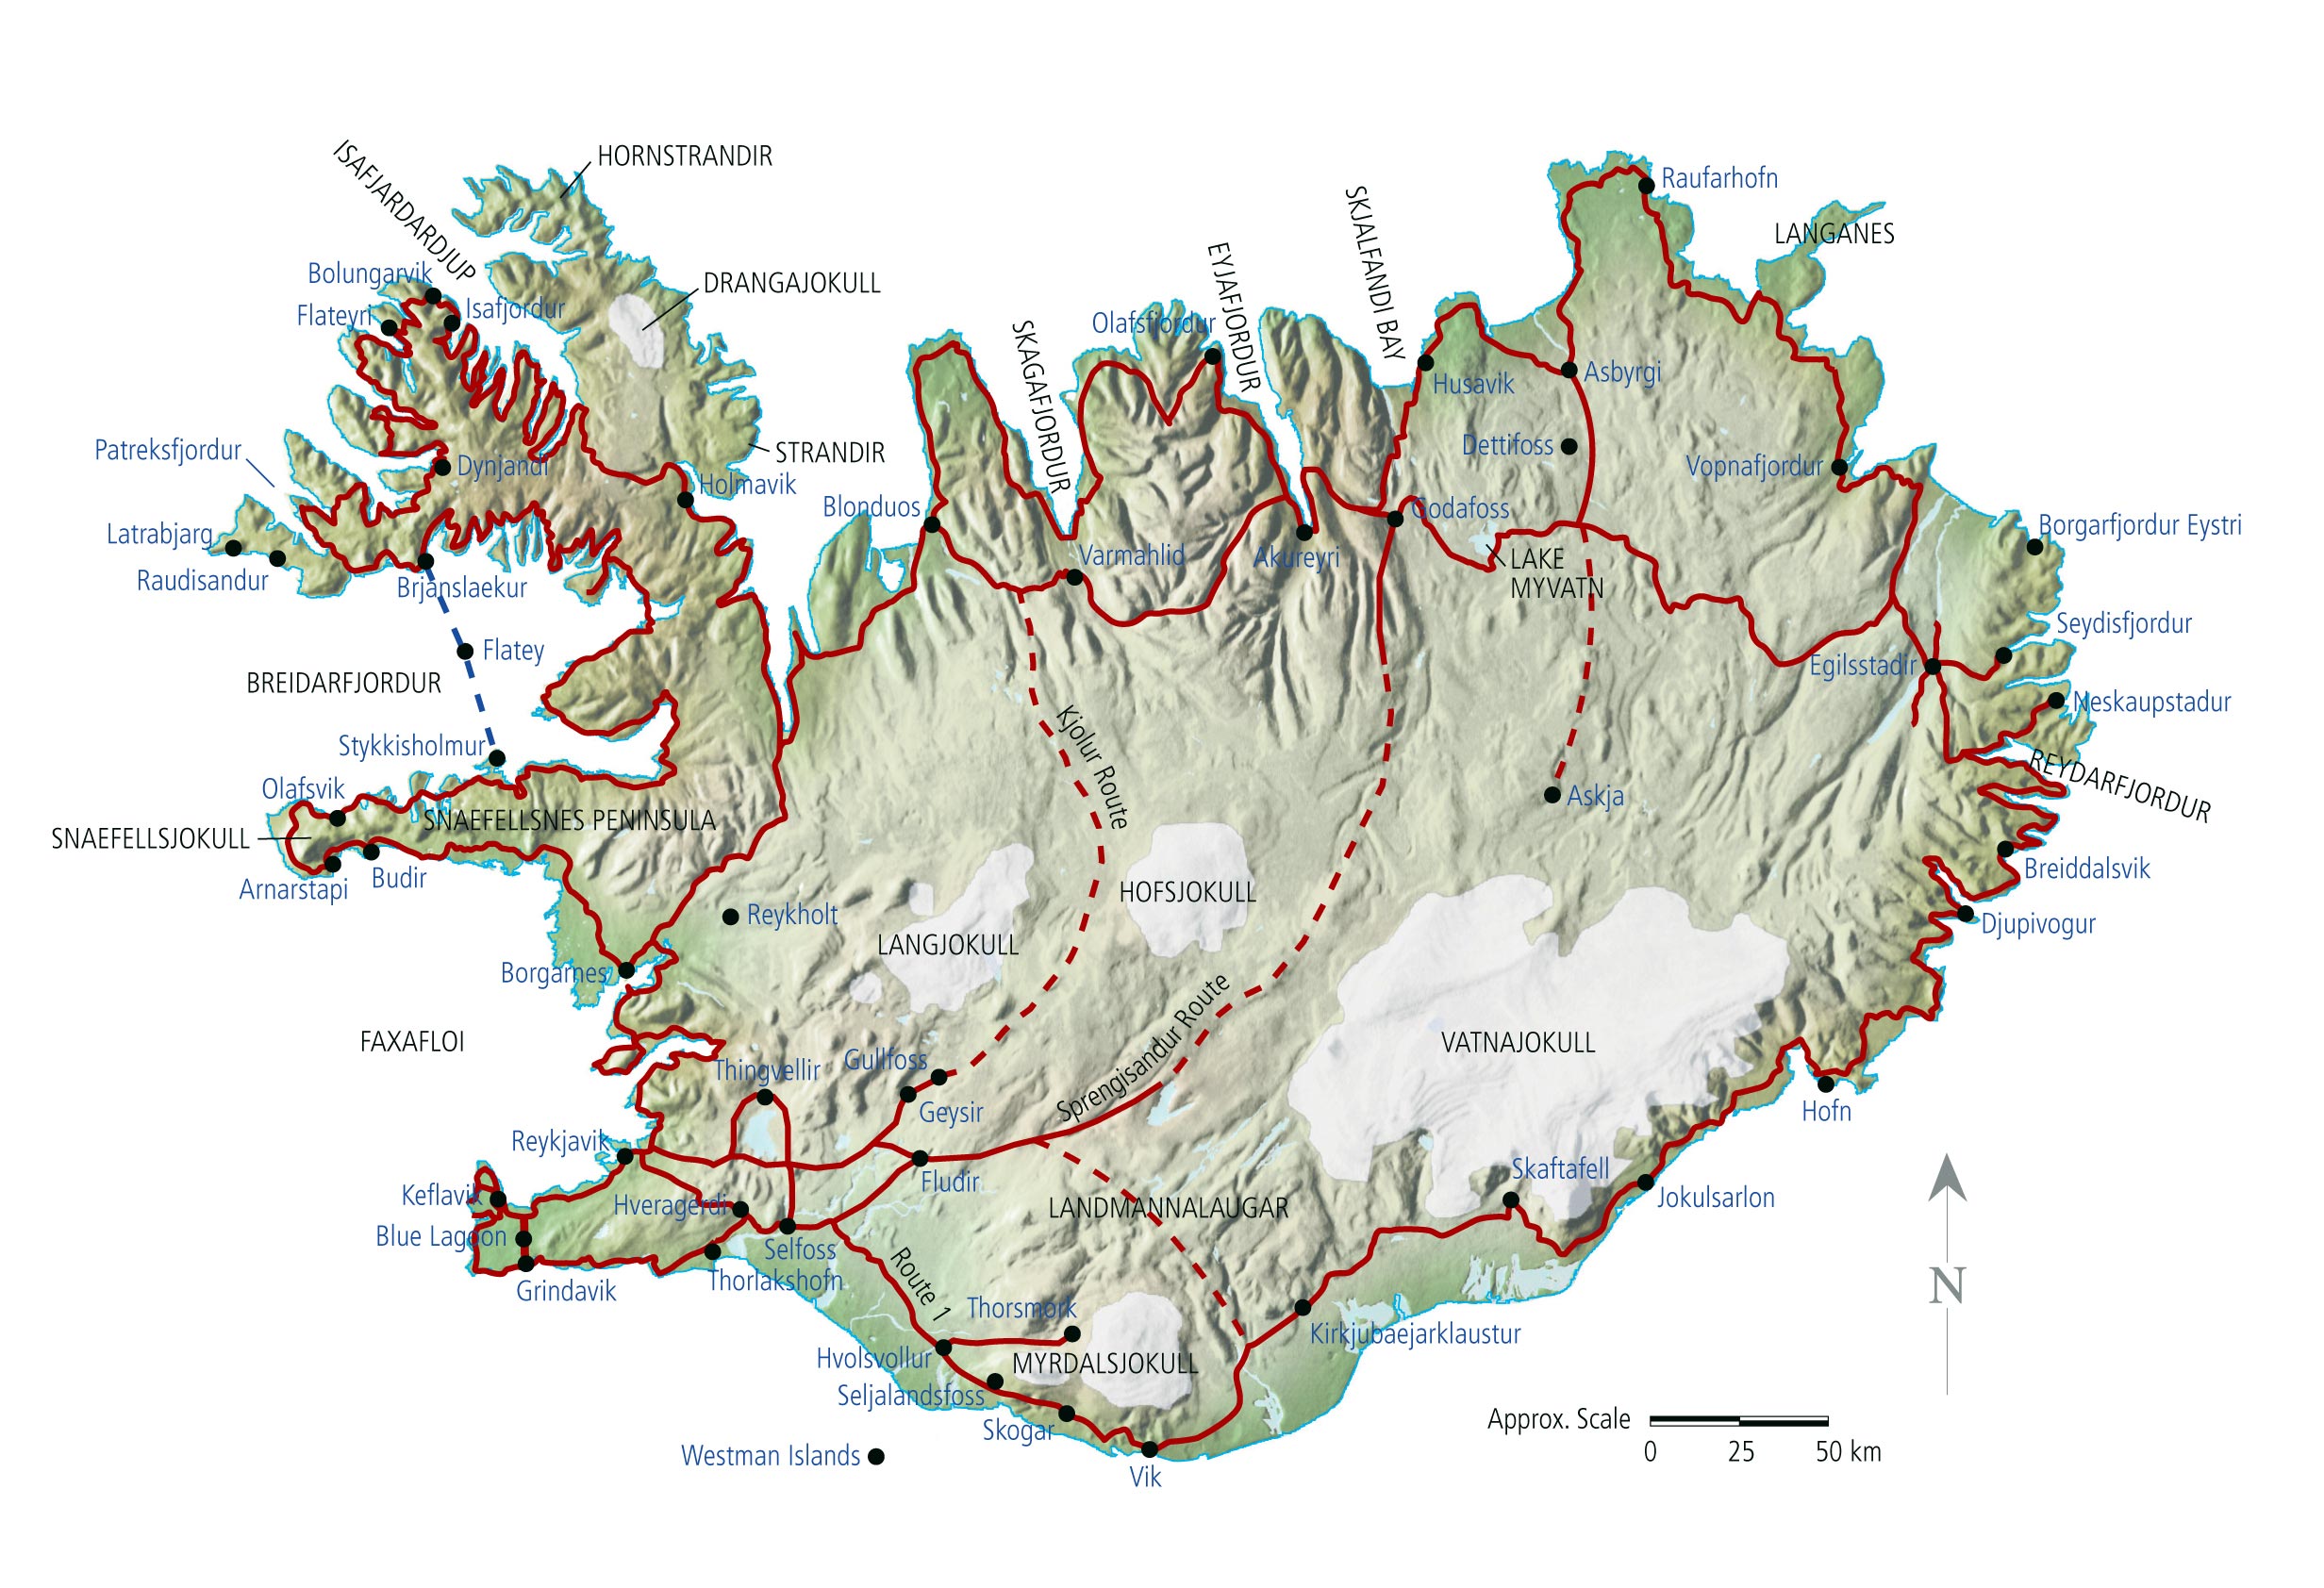 Karten von Island | Karten von Island zum Herunterladen ...